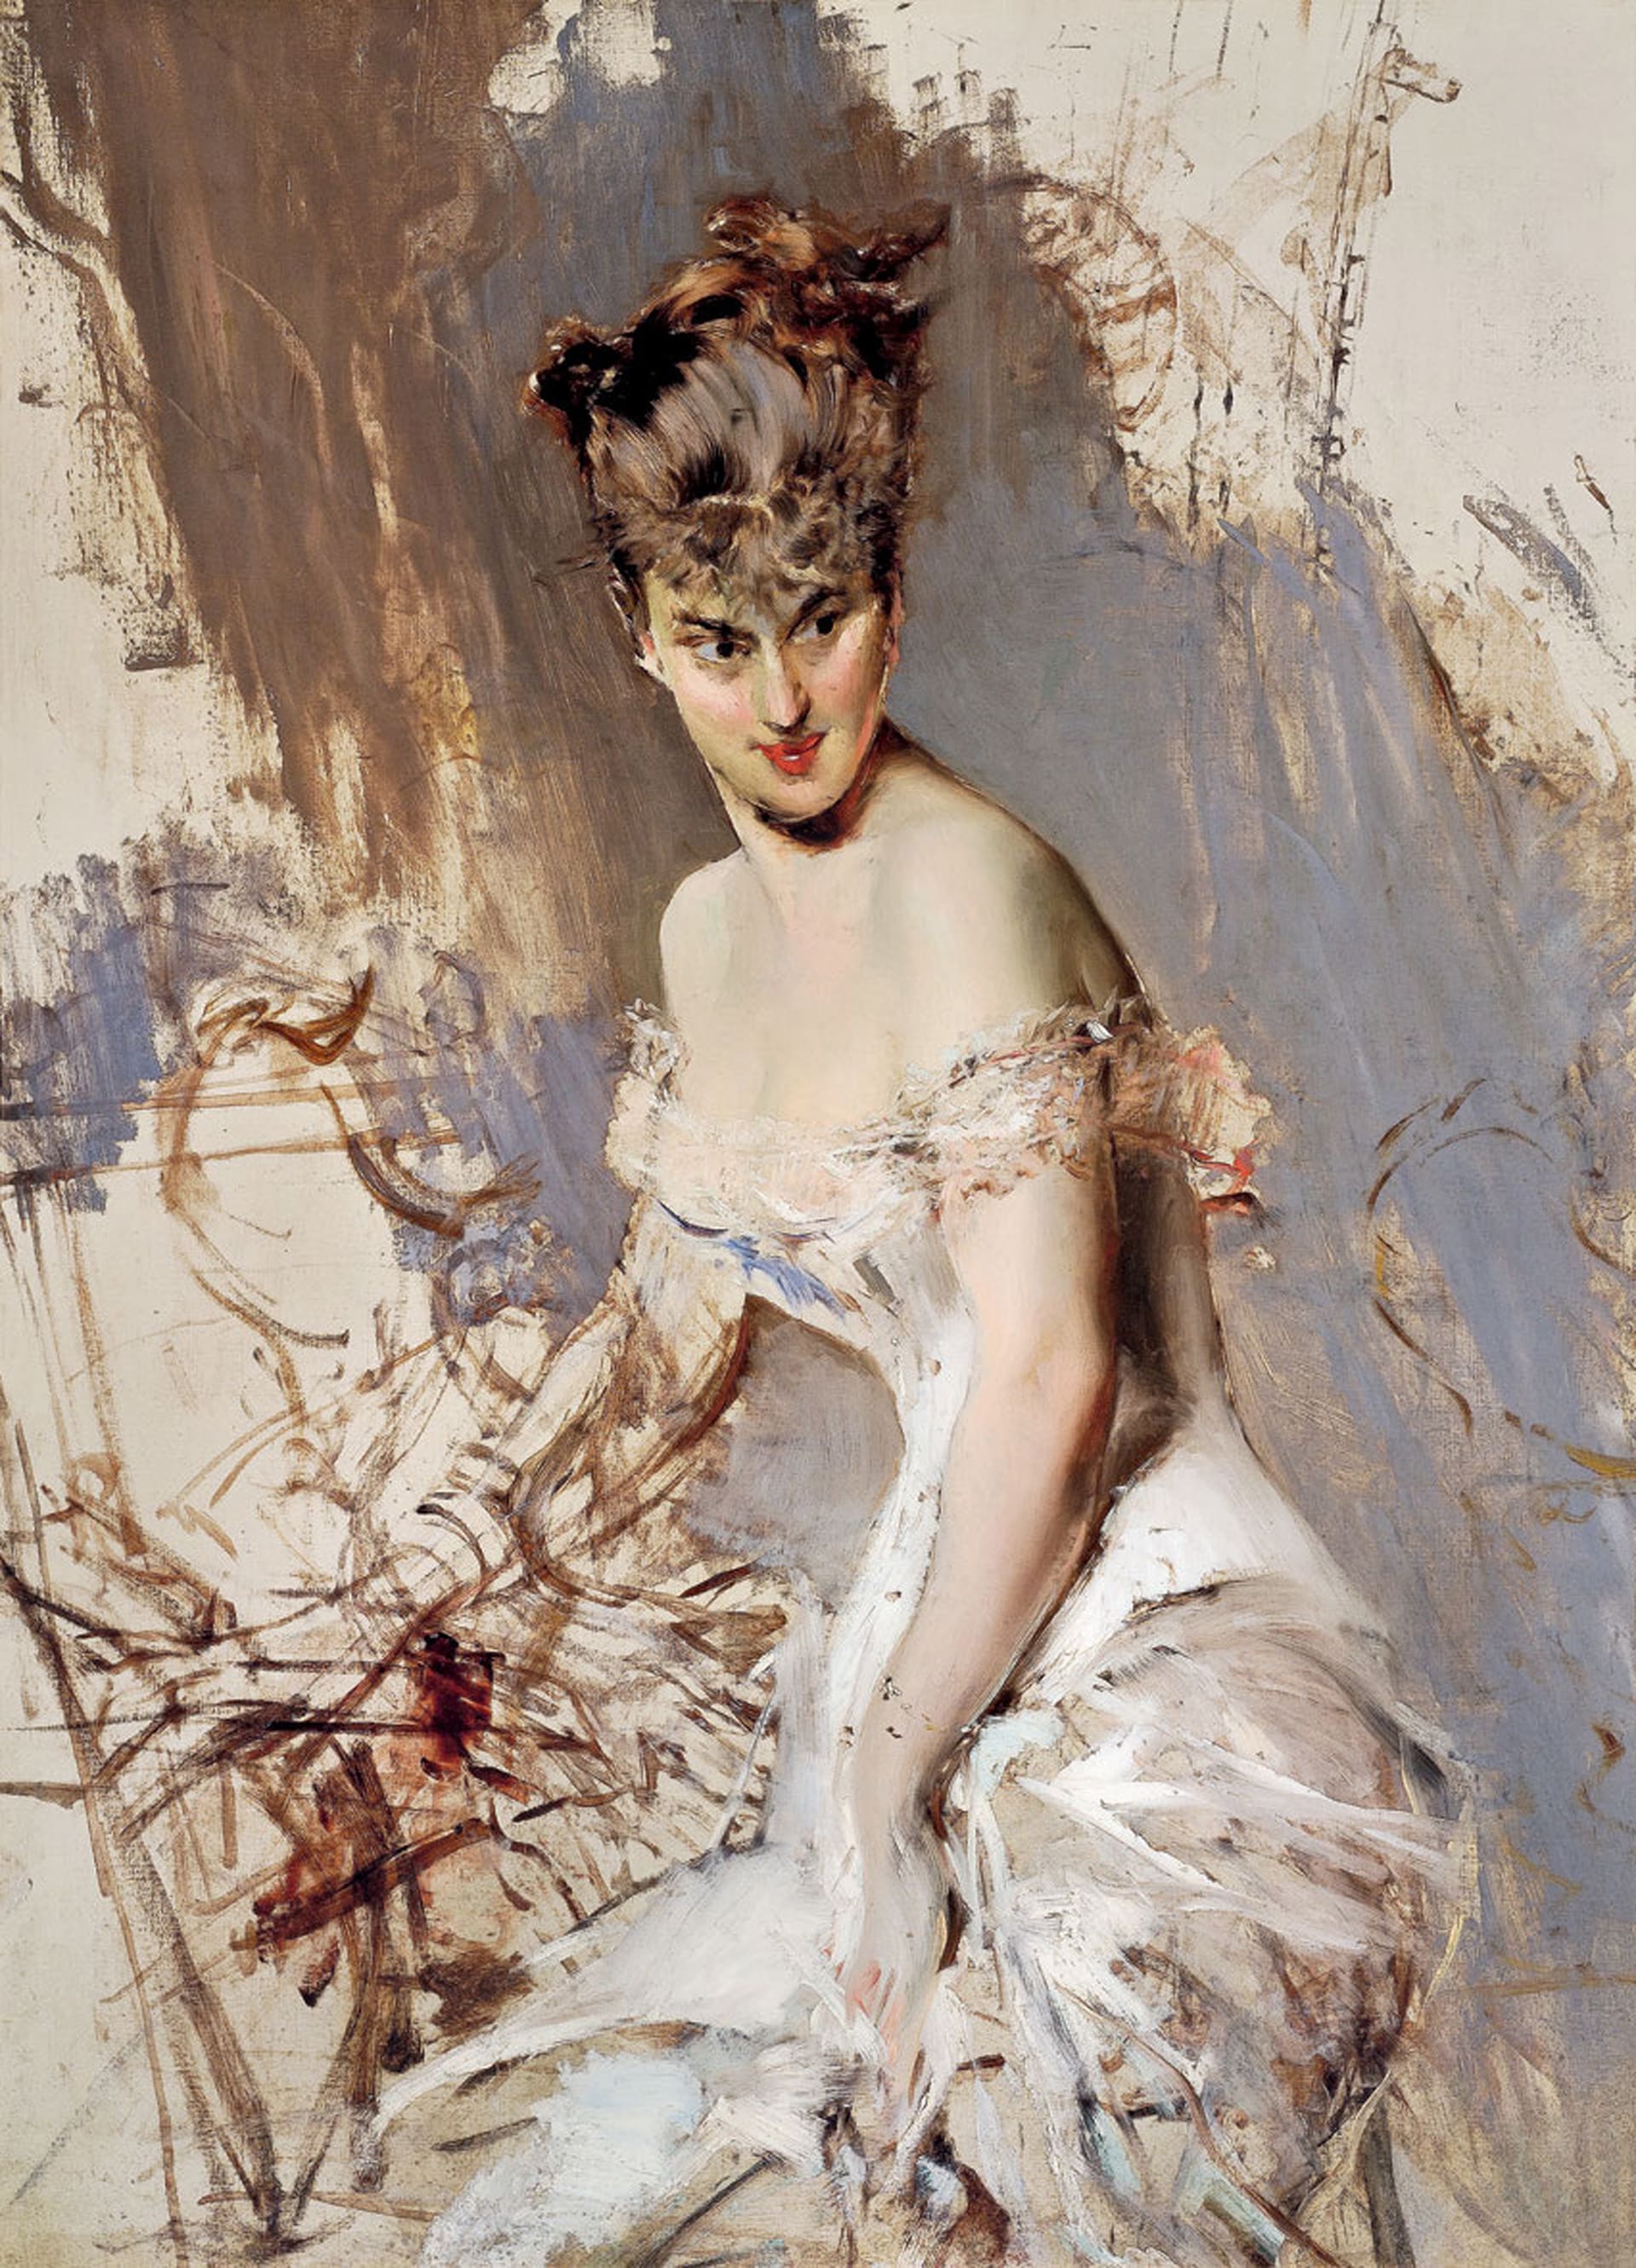 Giovanni Boldini "Ritratto dell'attrice Alice Regnault", 1880 ca. Olio su tela, 102 x 84 cm. Collezione privata. Courtesy Museo Archives Giovanni Boldini Macchiaioli